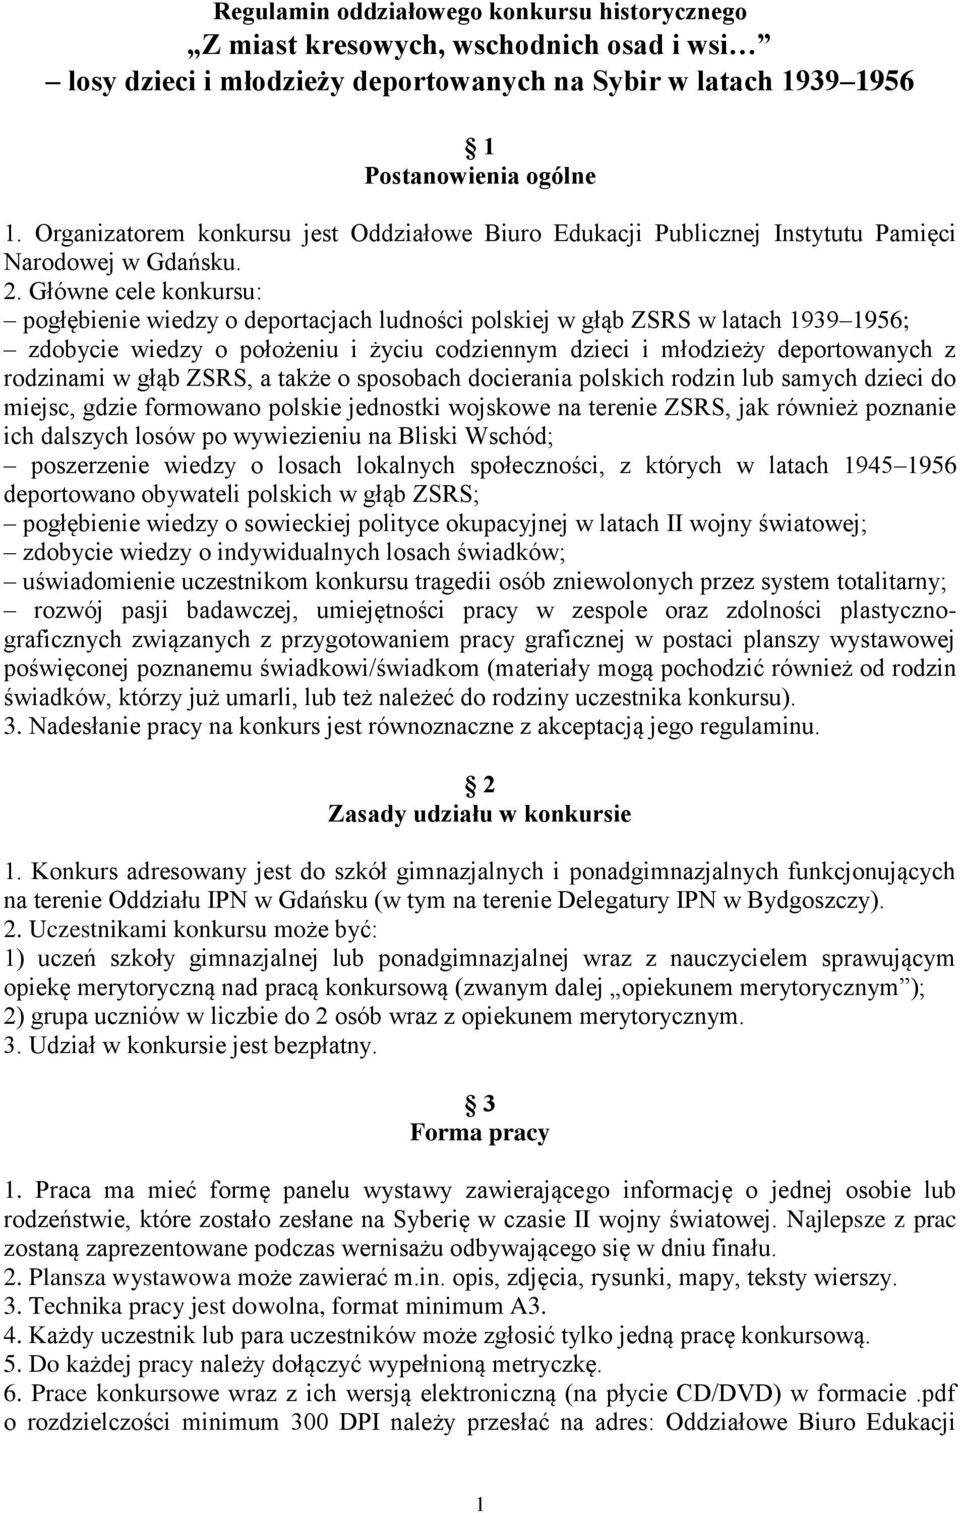 Główne cele konkursu: pogłębienie wiedzy o deportacjach ludności polskiej w głąb ZSRS w latach 1939 1956; zdobycie wiedzy o położeniu i życiu codziennym dzieci i młodzieży deportowanych z rodzinami w